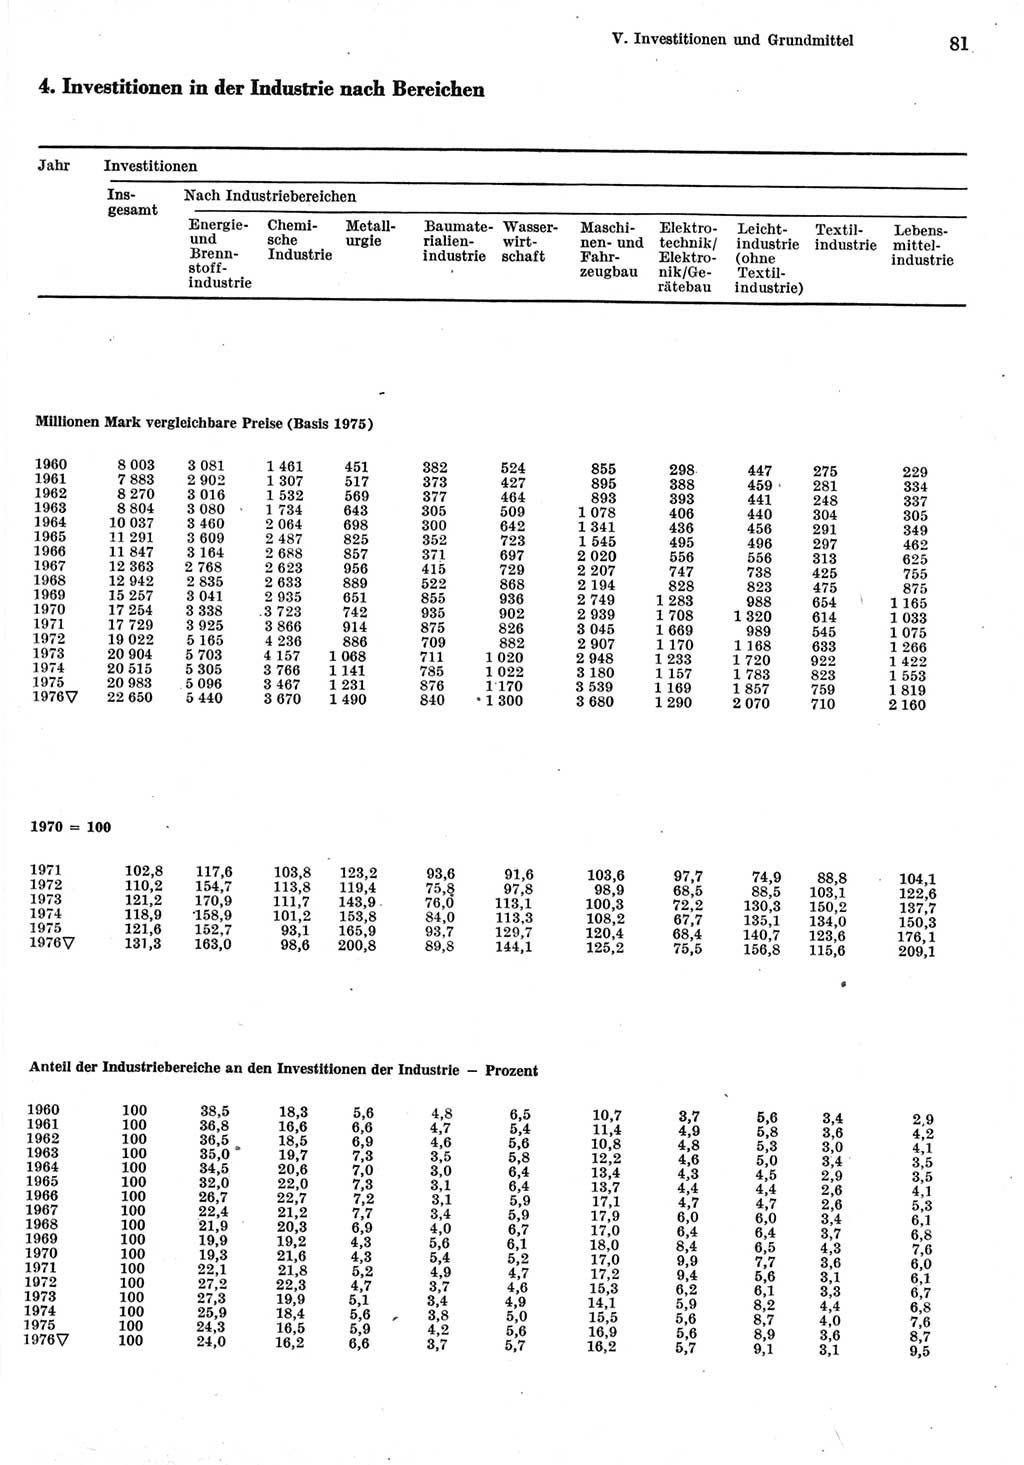 Statistisches Jahrbuch der Deutschen Demokratischen Republik (DDR) 1977, Seite 81 (Stat. Jb. DDR 1977, S. 81)